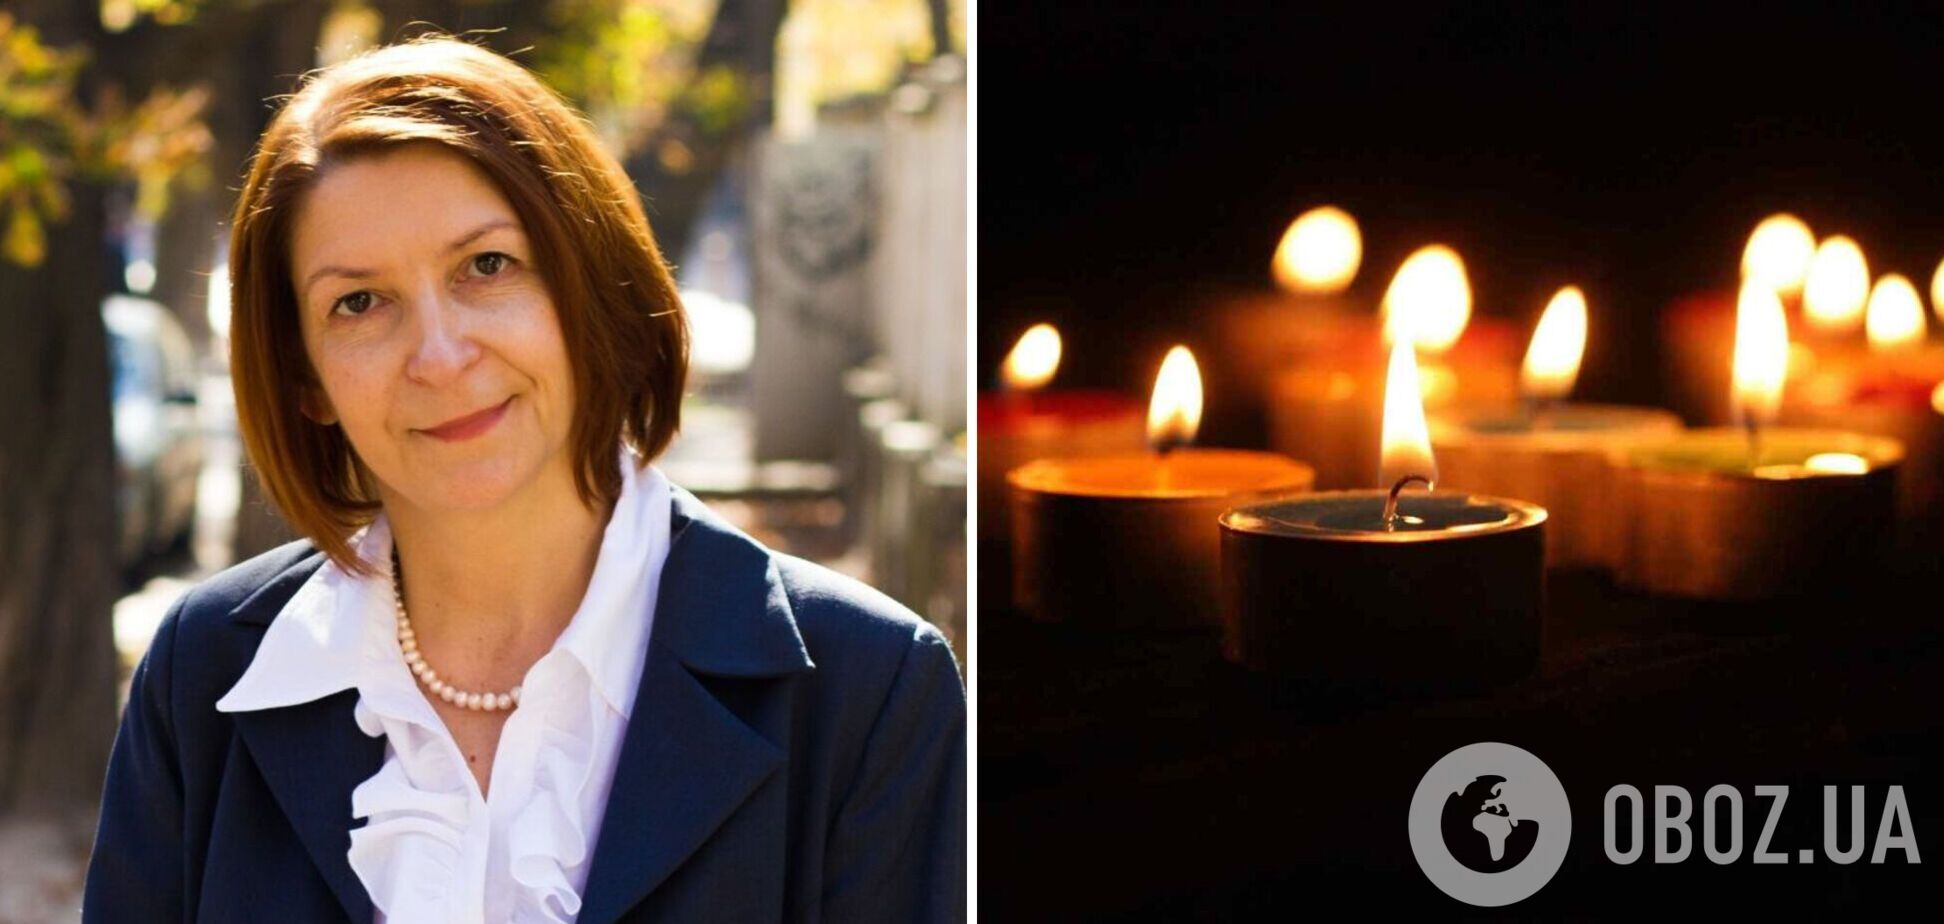 Ее тексты пугали лазаренко и фирташей: умерла известная украинская журналистка Алла Еременко. Фото